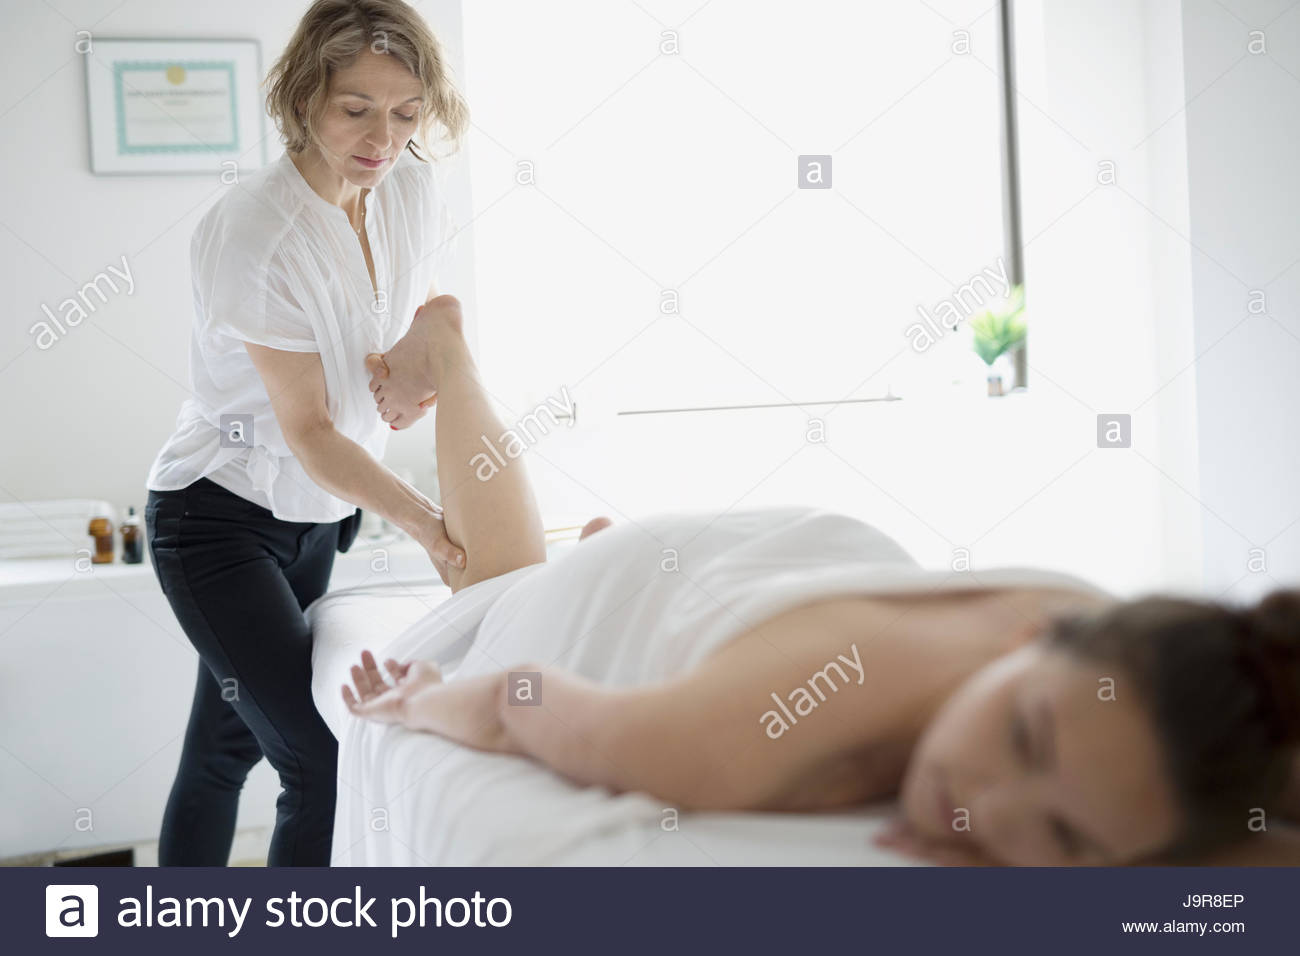 Masseuse massaging leg of woman on spa massage table Stock Photo